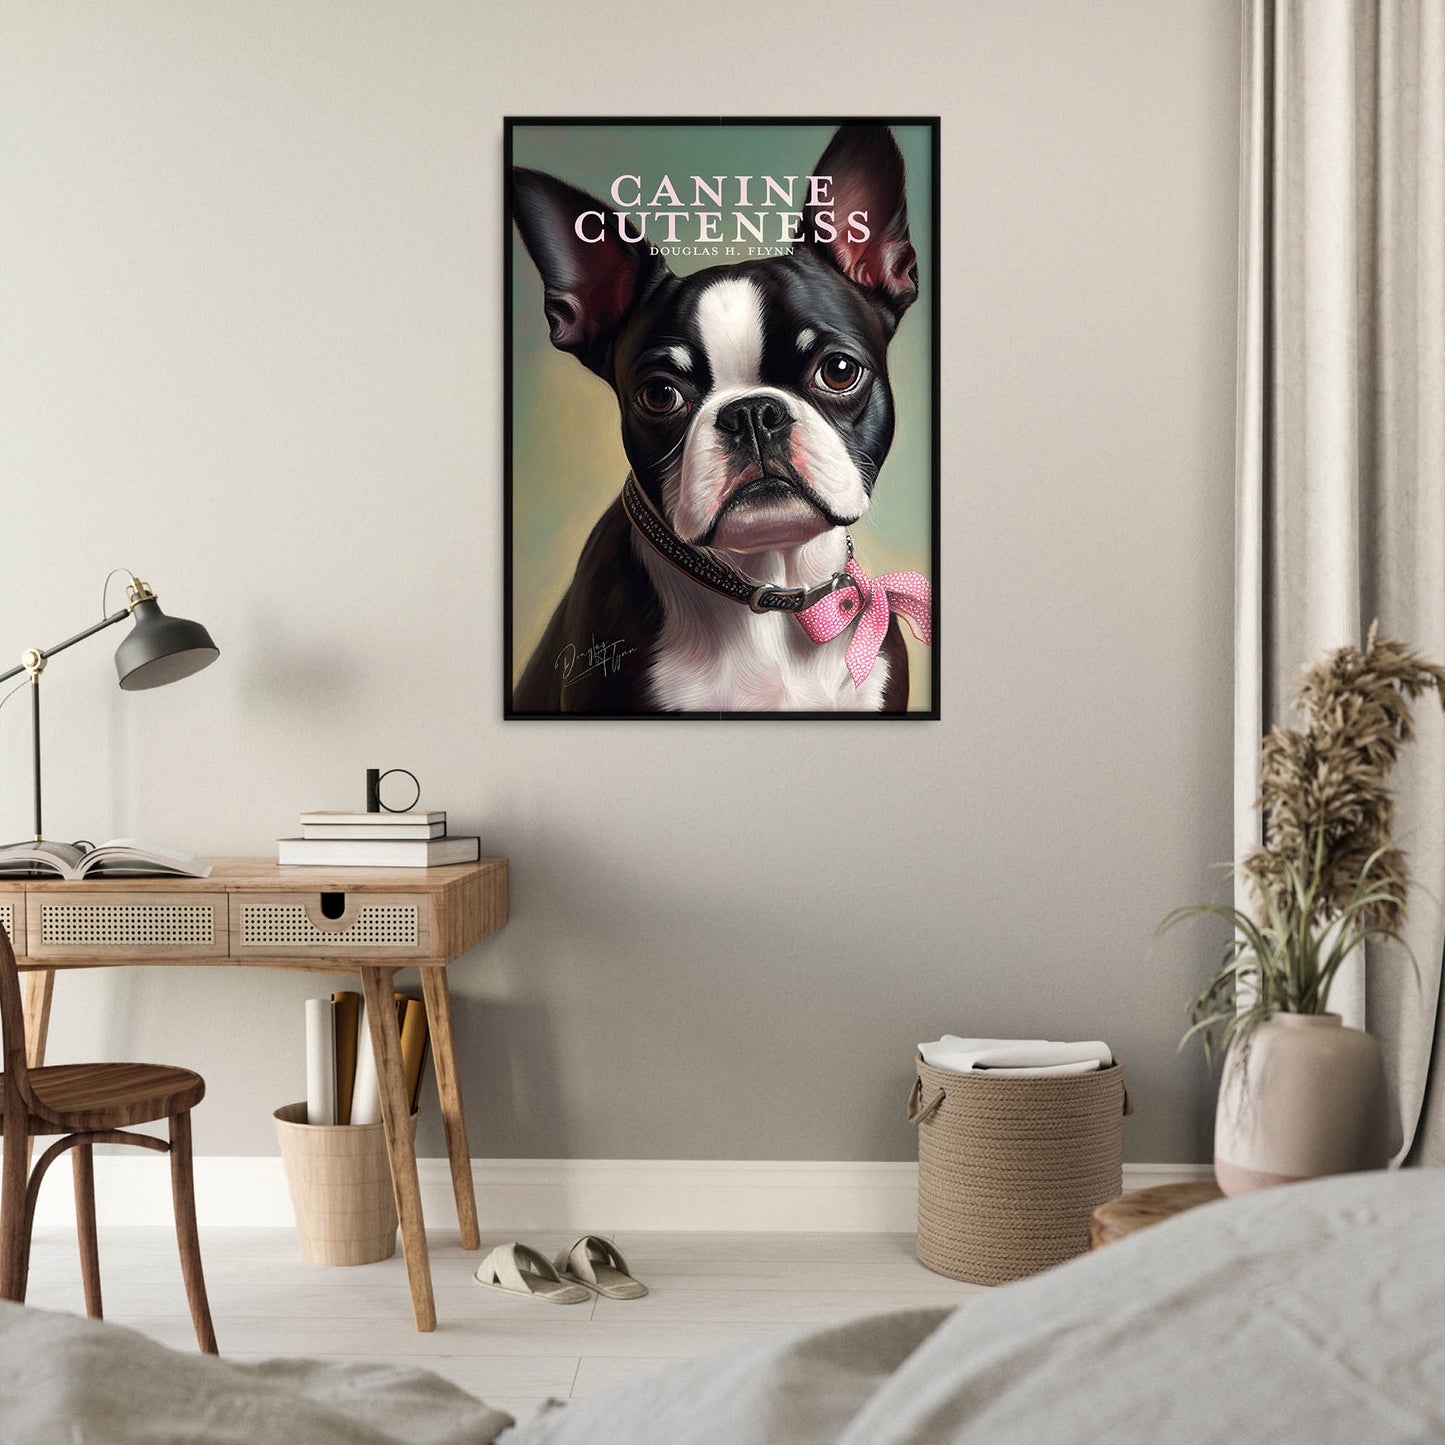 »Canine Cuteness« merch poster